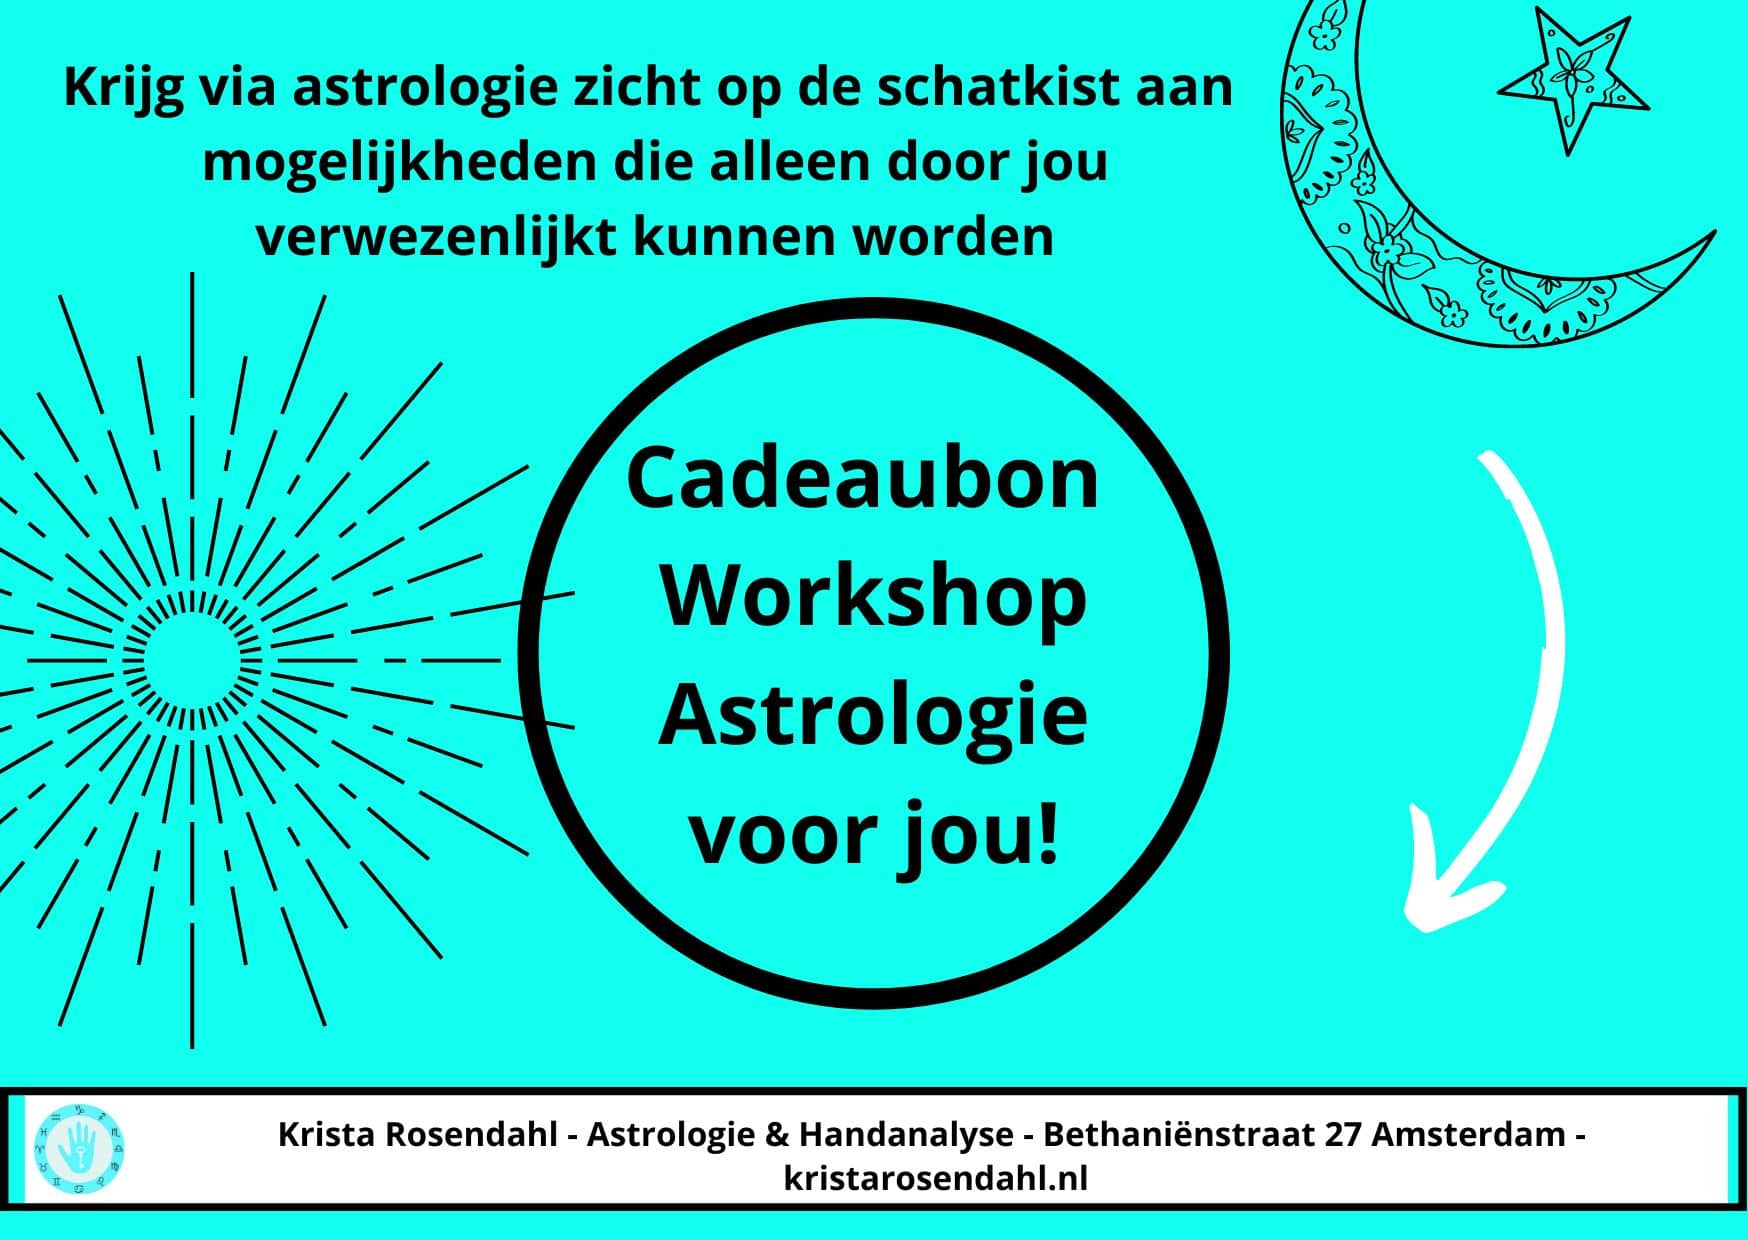 Vraag een cadeaubon voor een workshop astrologie aan bij Krista